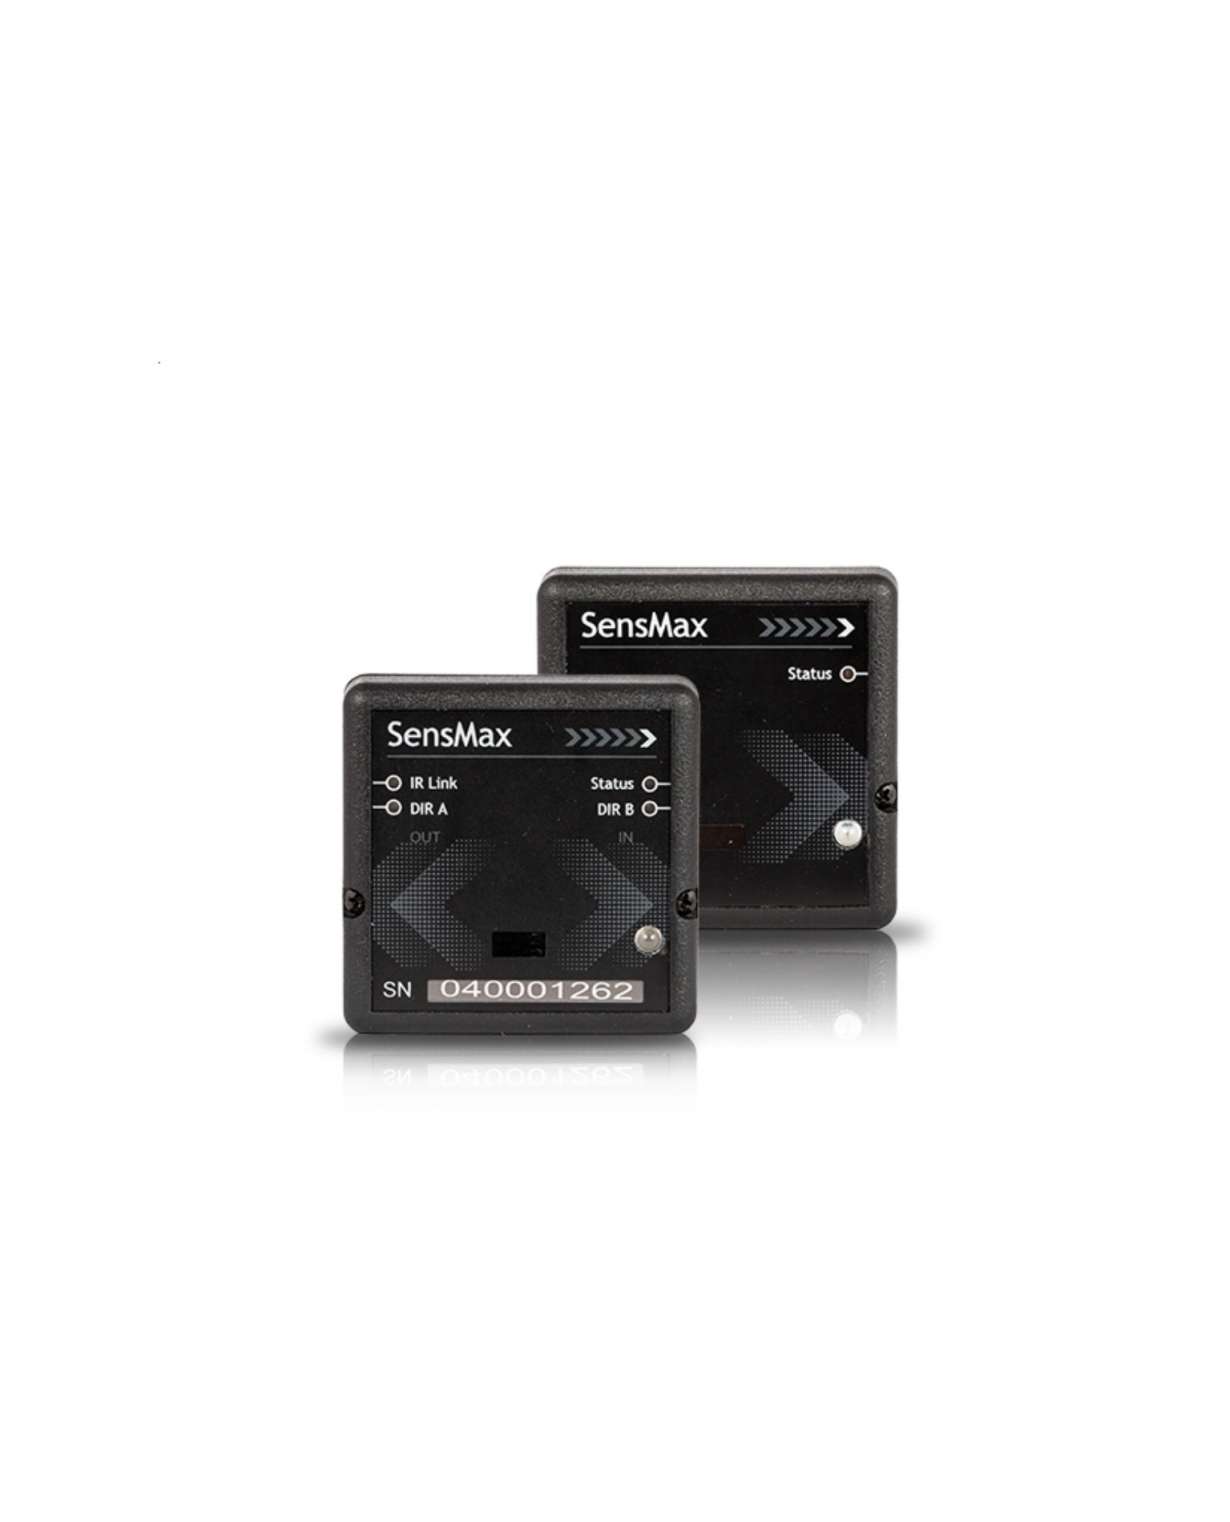 SensMax Pro D3, LR, suunnantunnistus